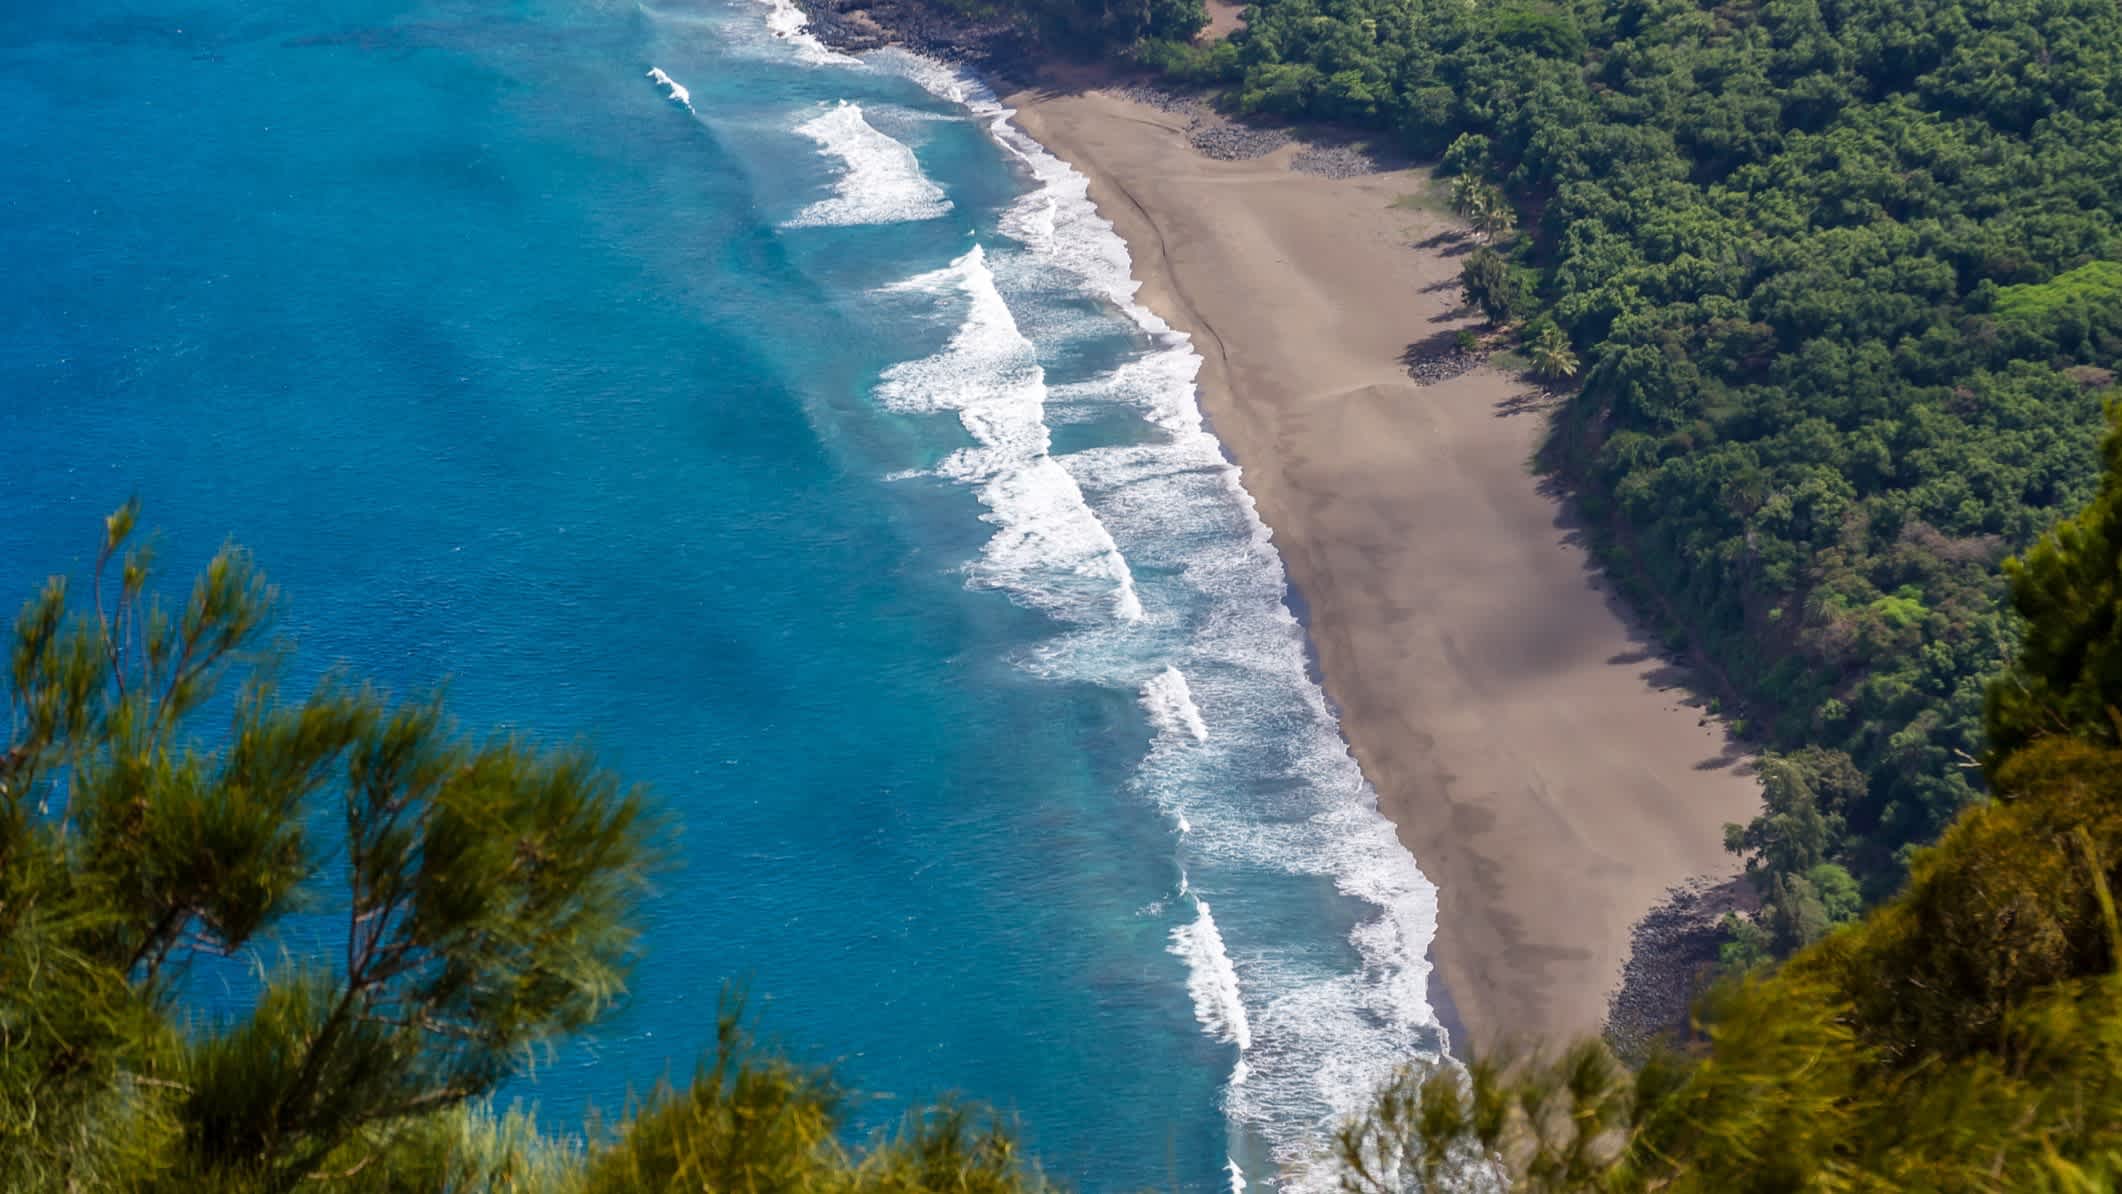 Vue aérienne de l'eau turquoise et du sable blanc de la plage de Kumimi, Molokai, Hawaï